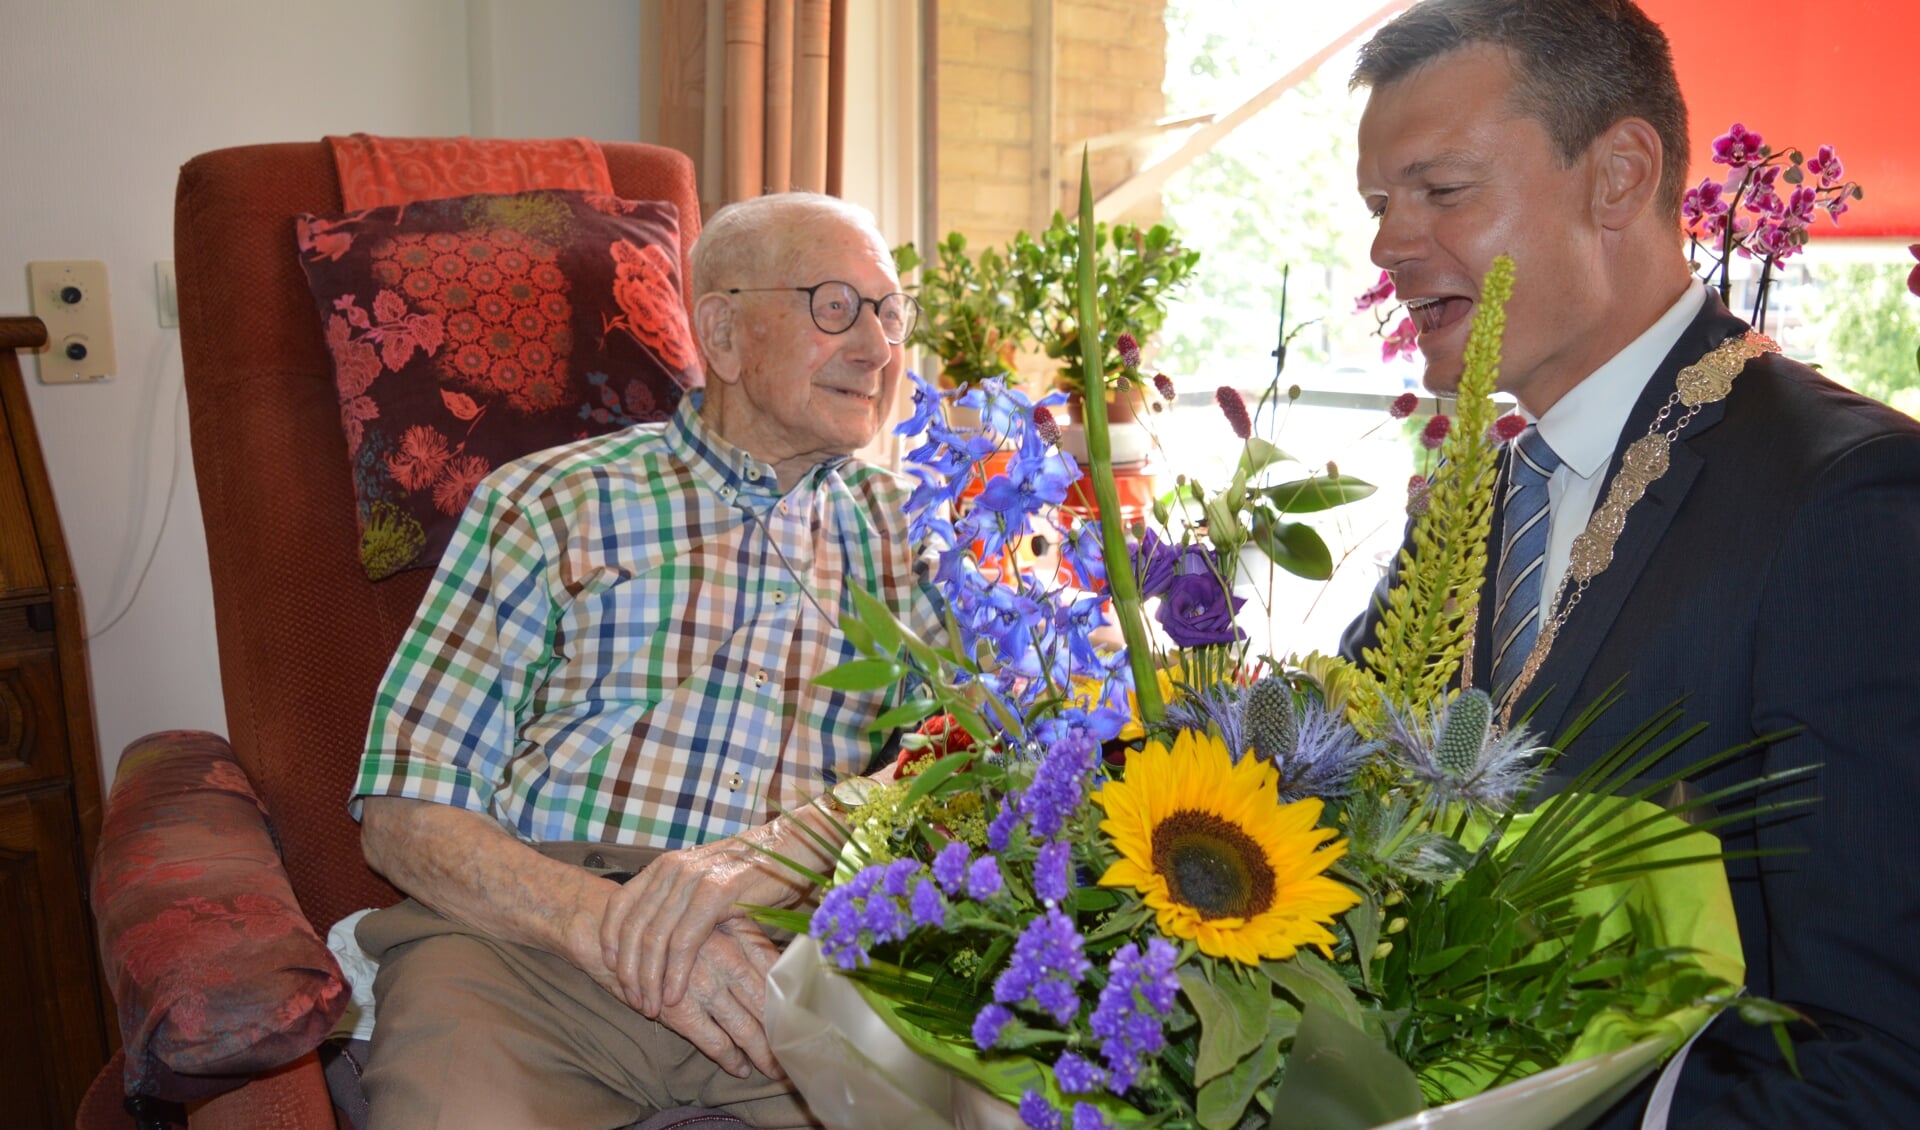 De 100-jarige Dirk van Rooijen kreeg van burgemeester Nieuwenhuis een bloemetje. (foto en tekst: Nicole Lamers)